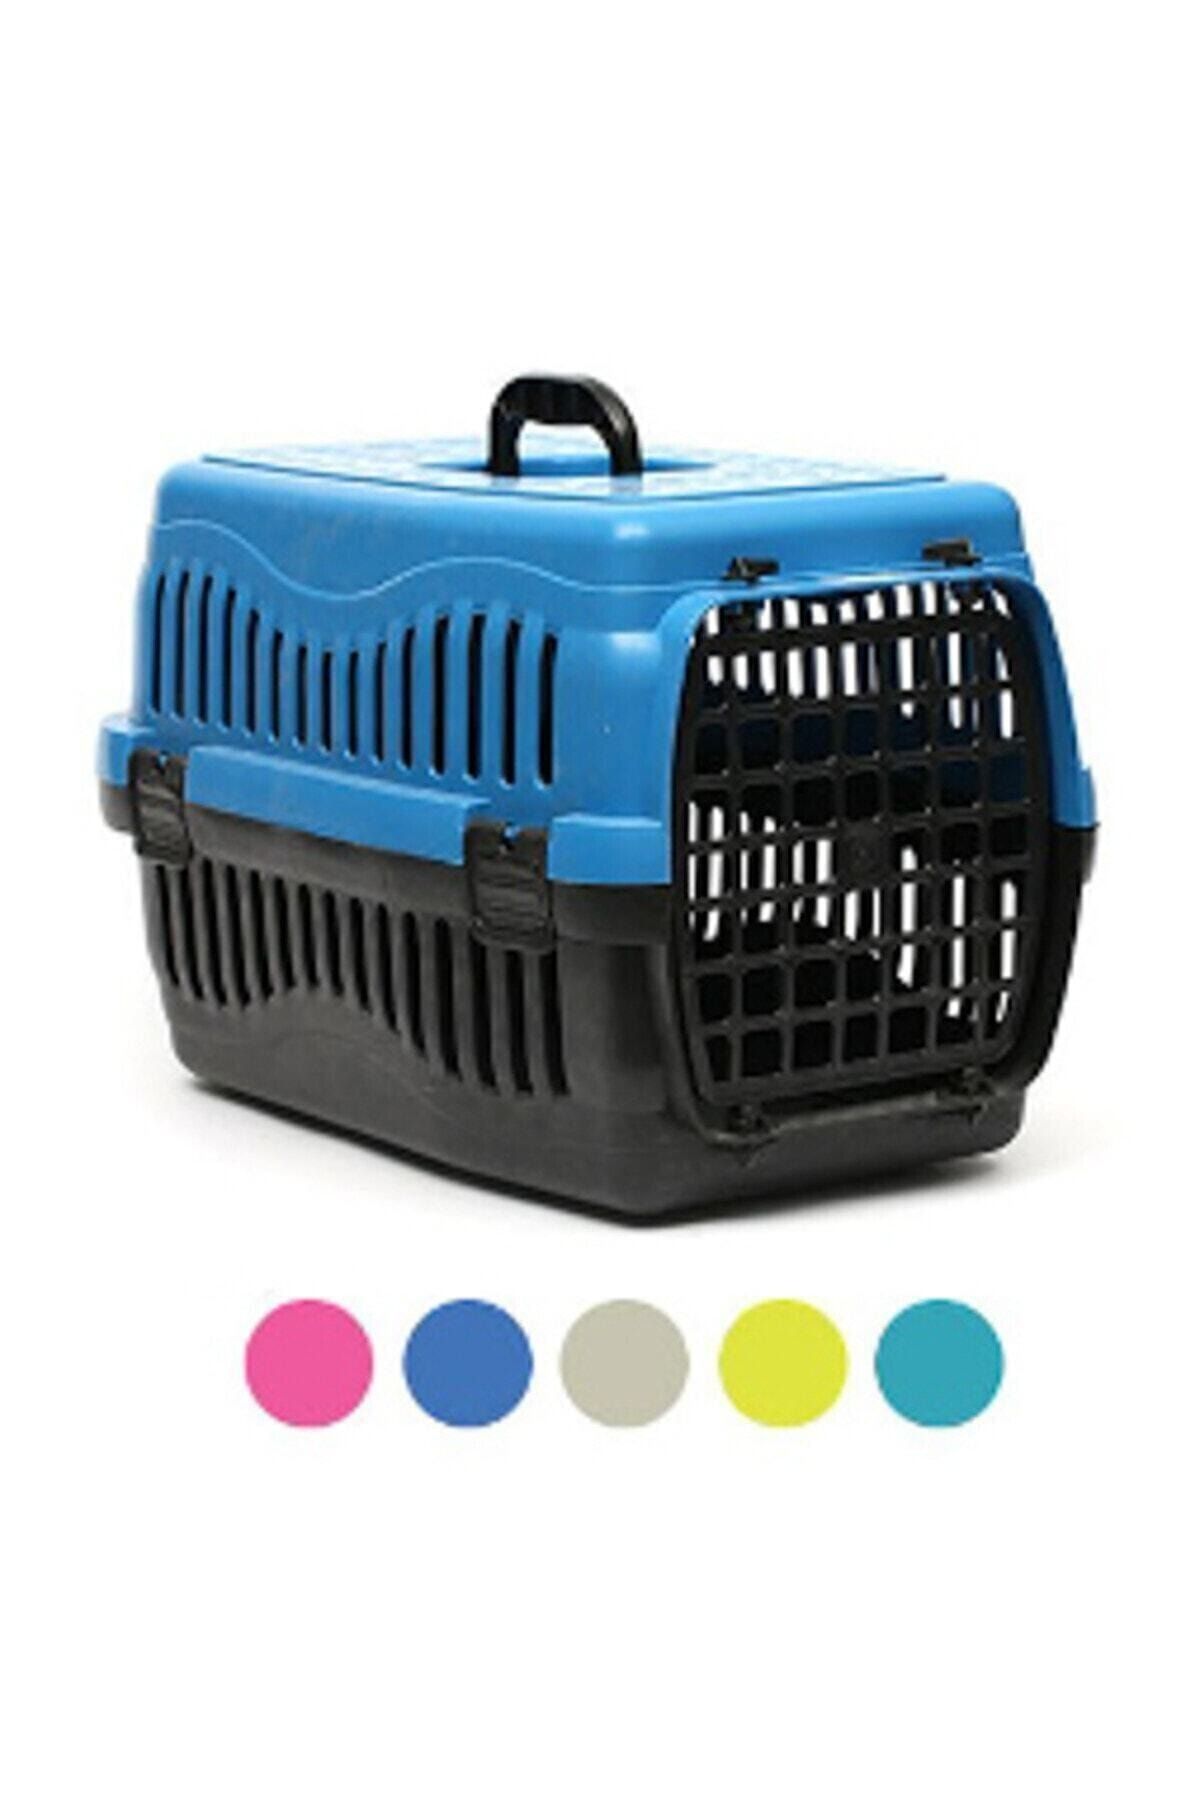 Quik Pati Desenli Kedi Köpek Taşıma Kabı Küçük 45 Cm X 28 Cm X 30 Cm